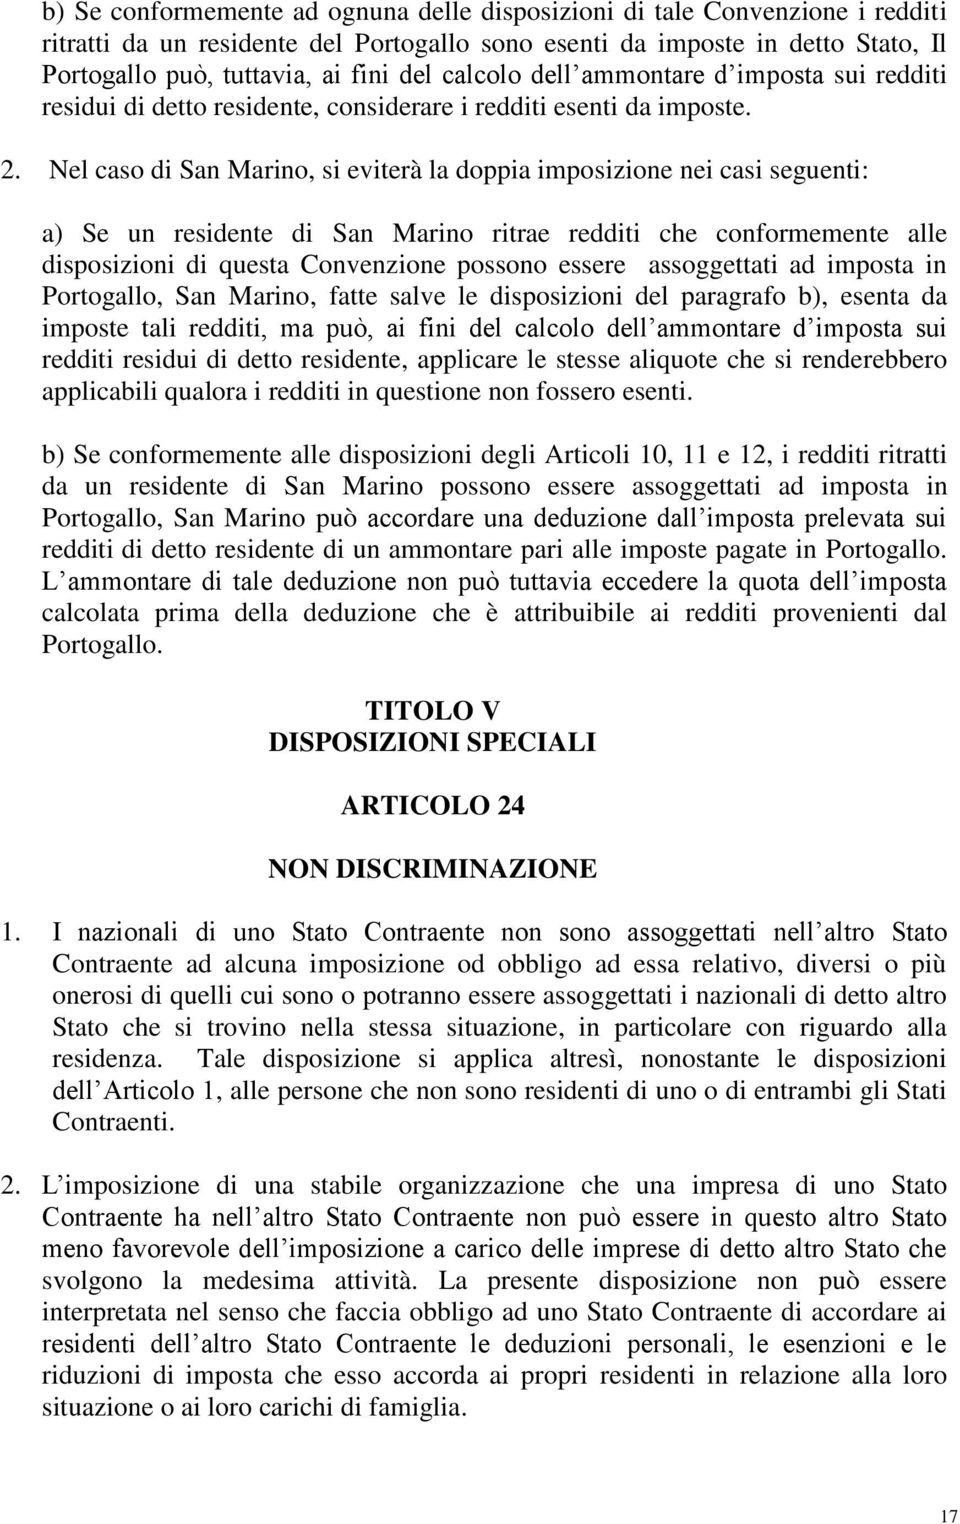 Nel caso di San Marino, si eviterà la doppia imposizione nei casi seguenti: a) Se un residente di San Marino ritrae redditi che conformemente alle disposizioni di questa Convenzione possono essere